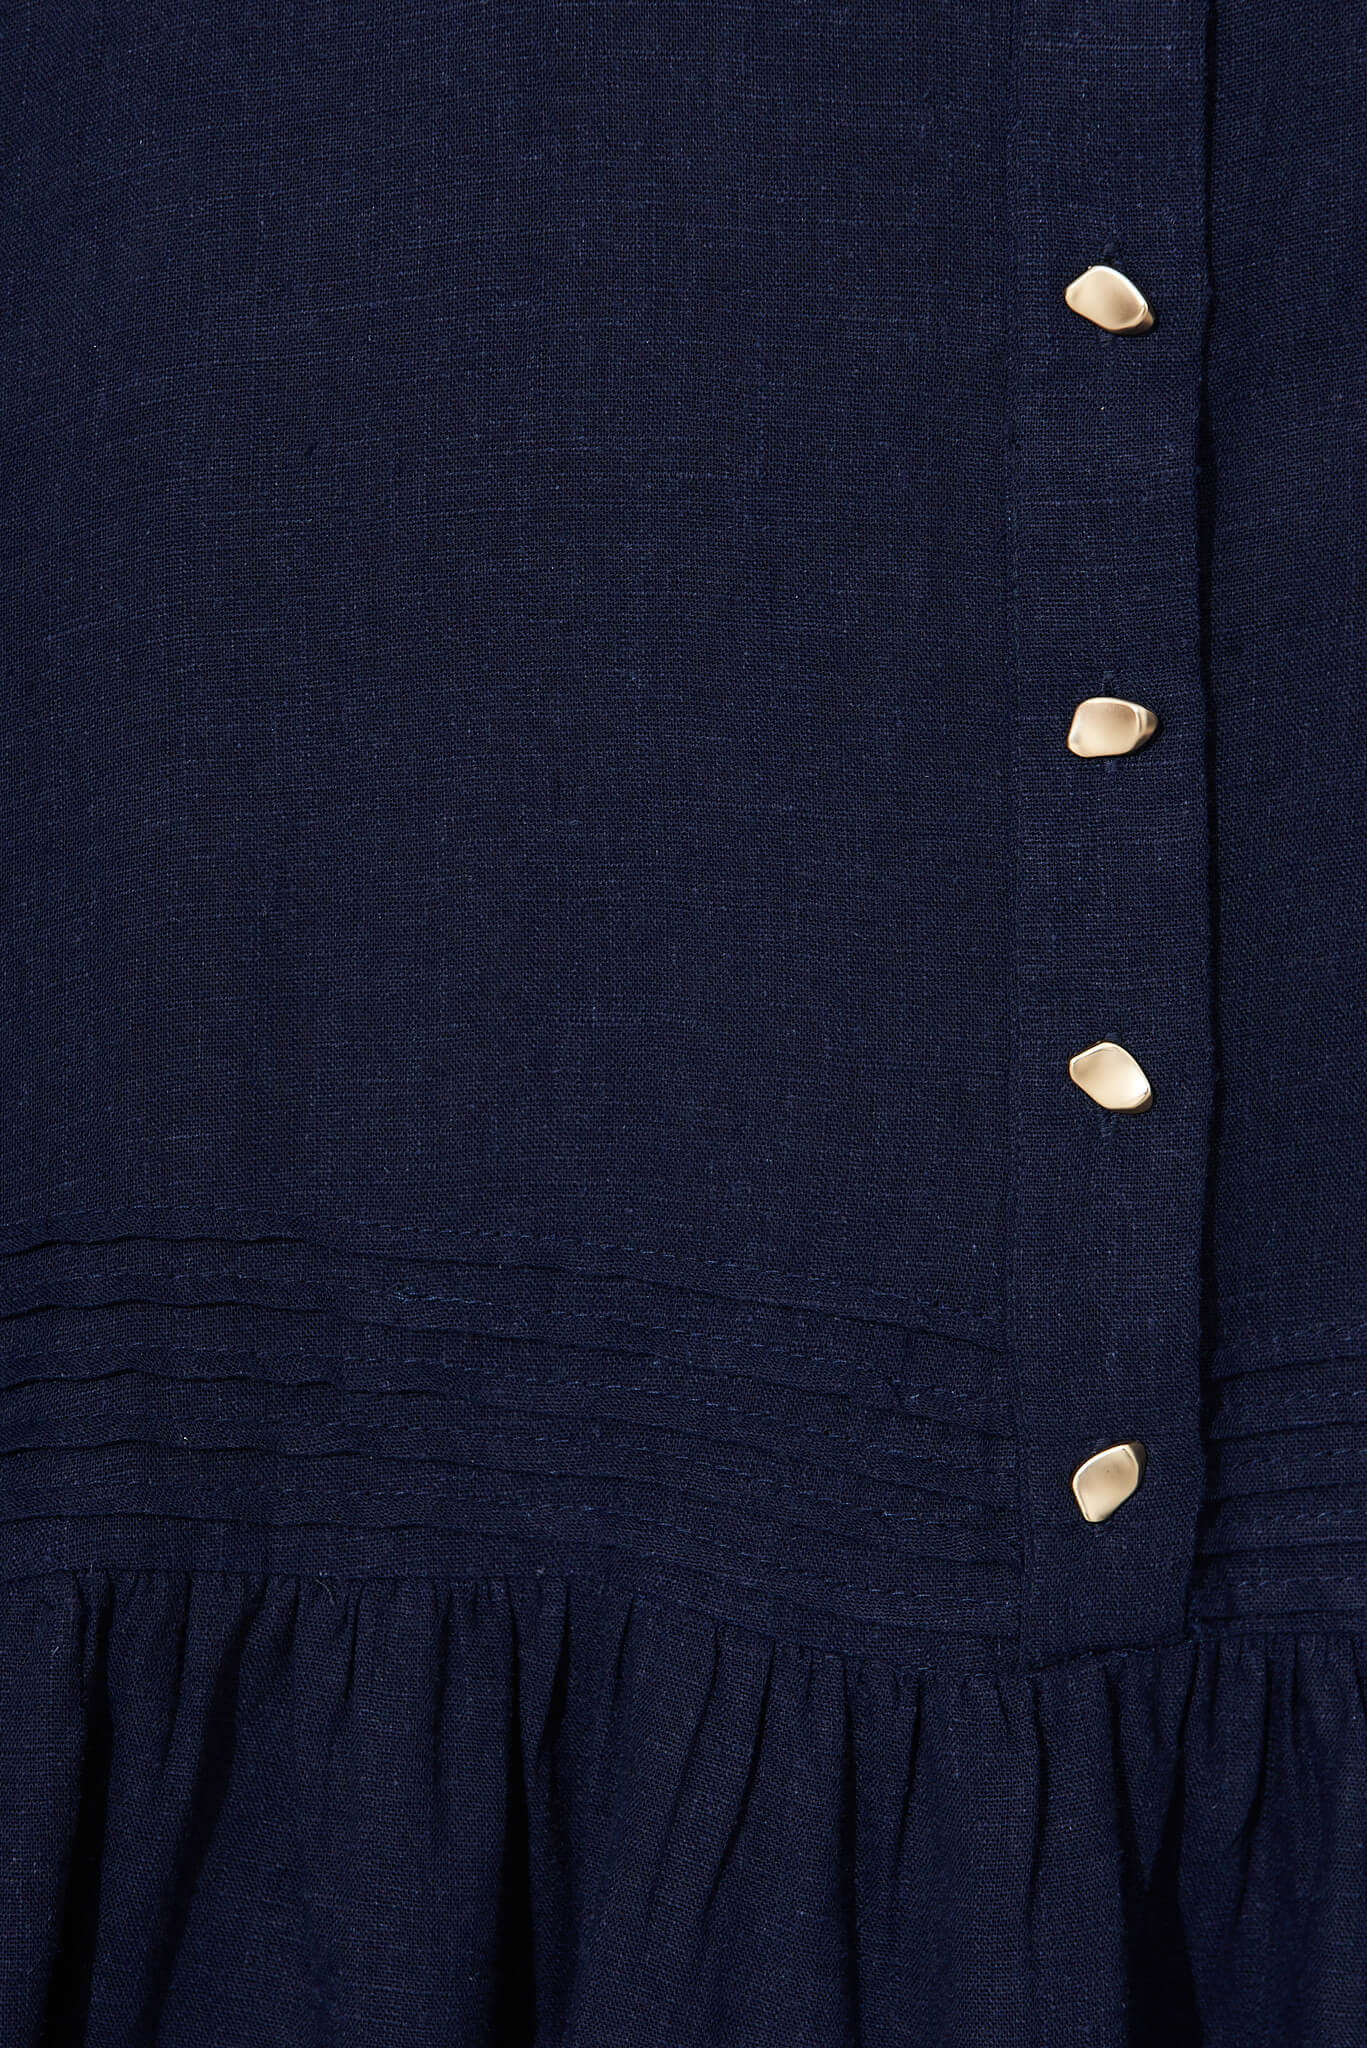 Irresistible Shirt Dress In Navy Linen Cotton Blend – St Frock